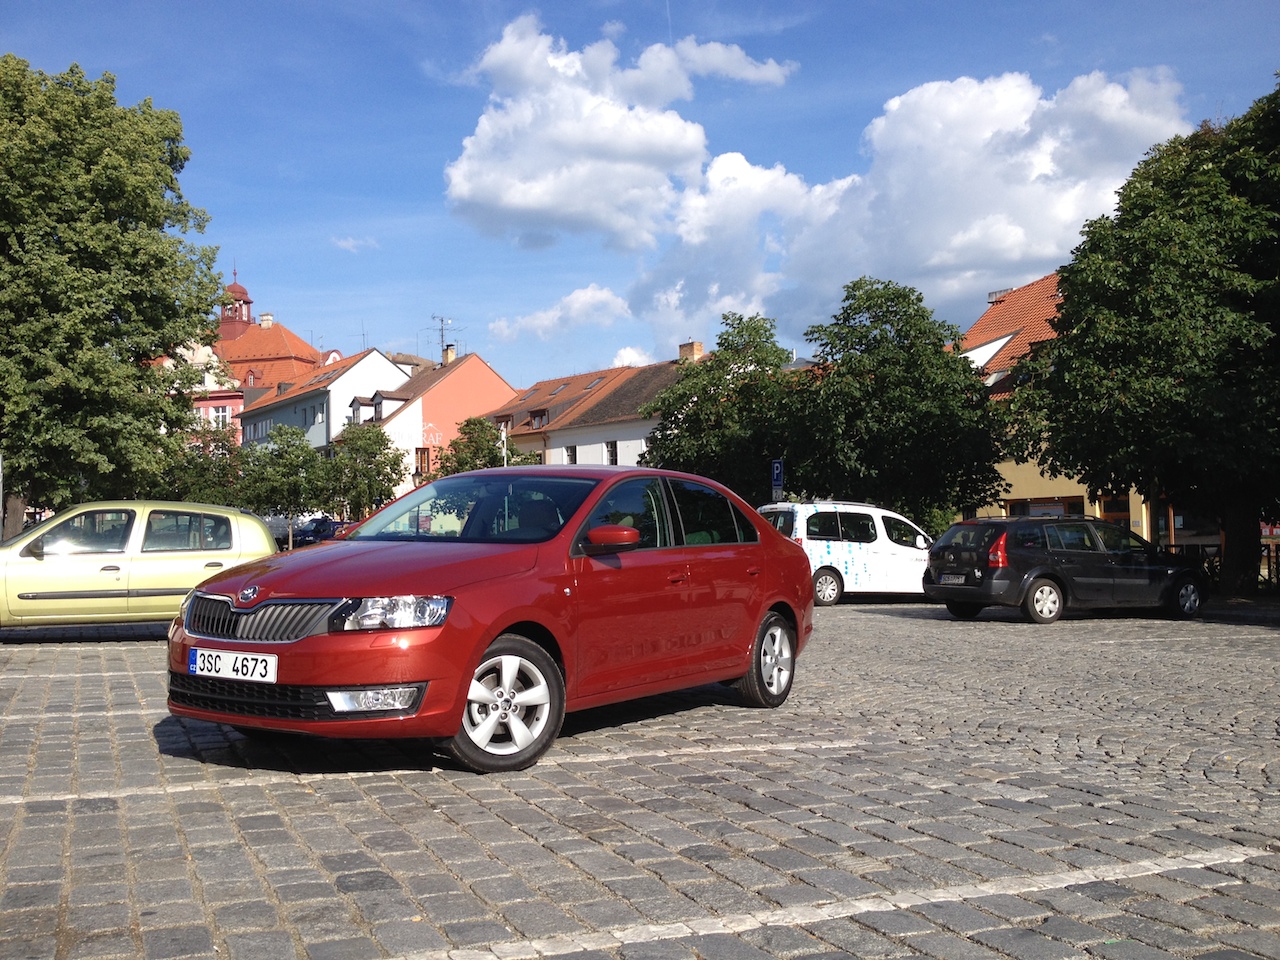 Škoda Rapid 1,2 TSI GreenTec - fotka zepředu u věže v Písku